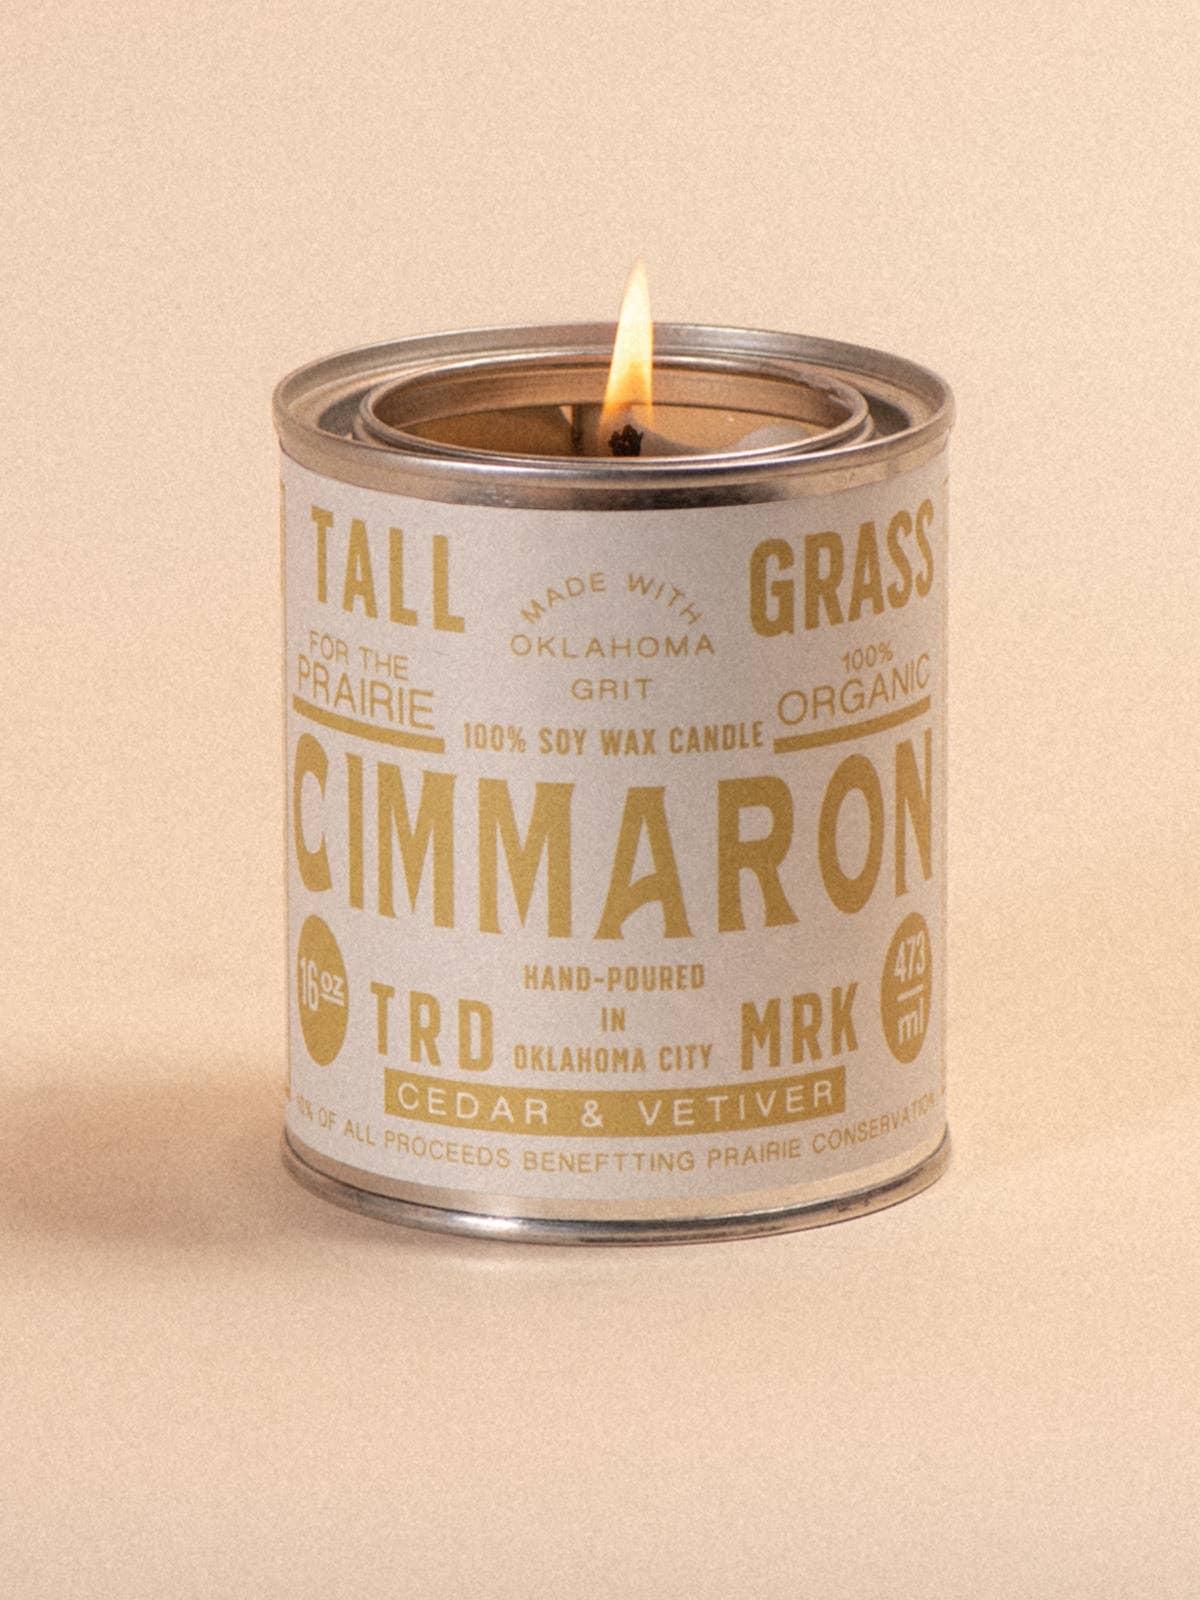 Cimmaron: Cedar + Vetiver Soy Wax Candle: 8 oz